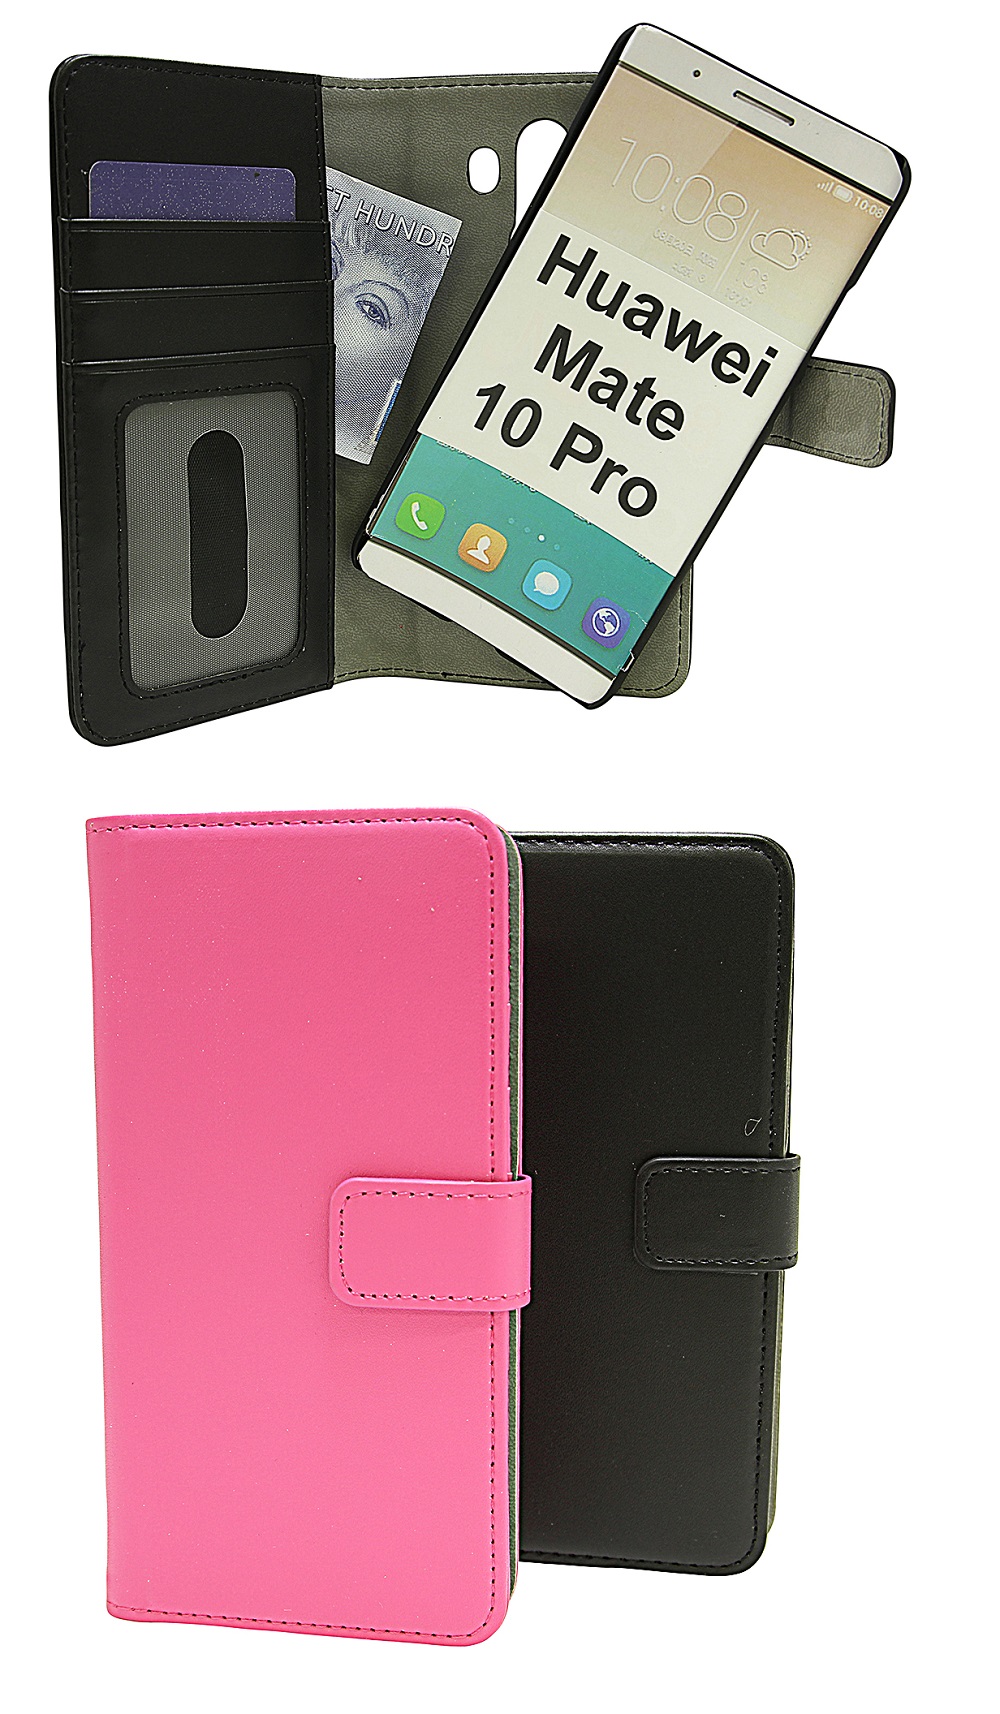 Magnet Wallet Huawei Mate 10 Pro